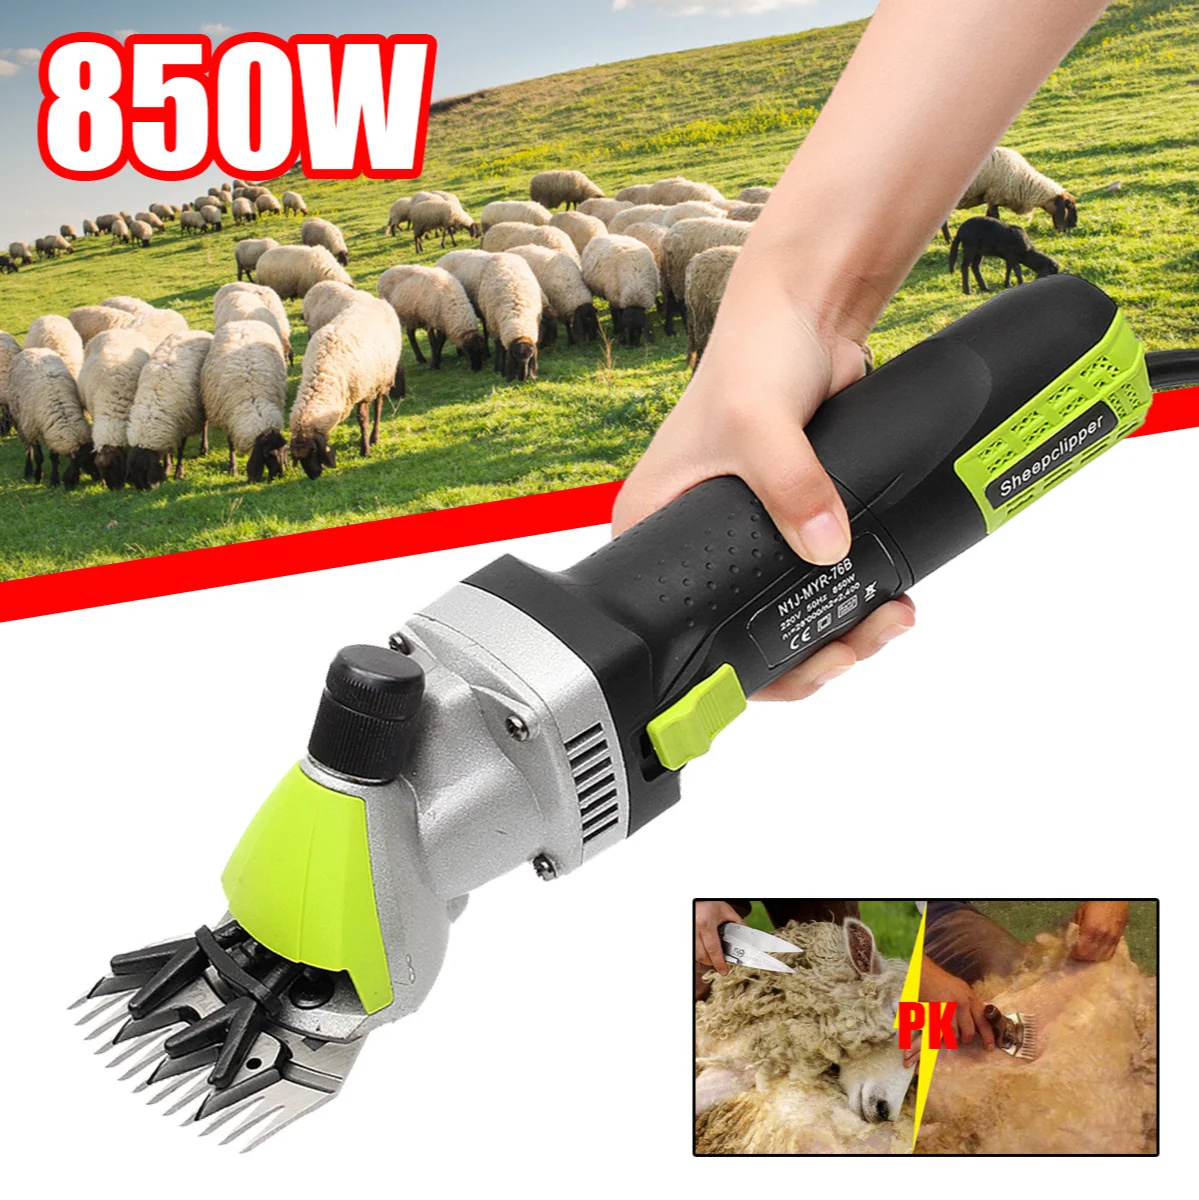 

850W Speed Electric Shearing Clipper Shear Sheep Goats Alpaca Shears Pet Hair Shearing Machine